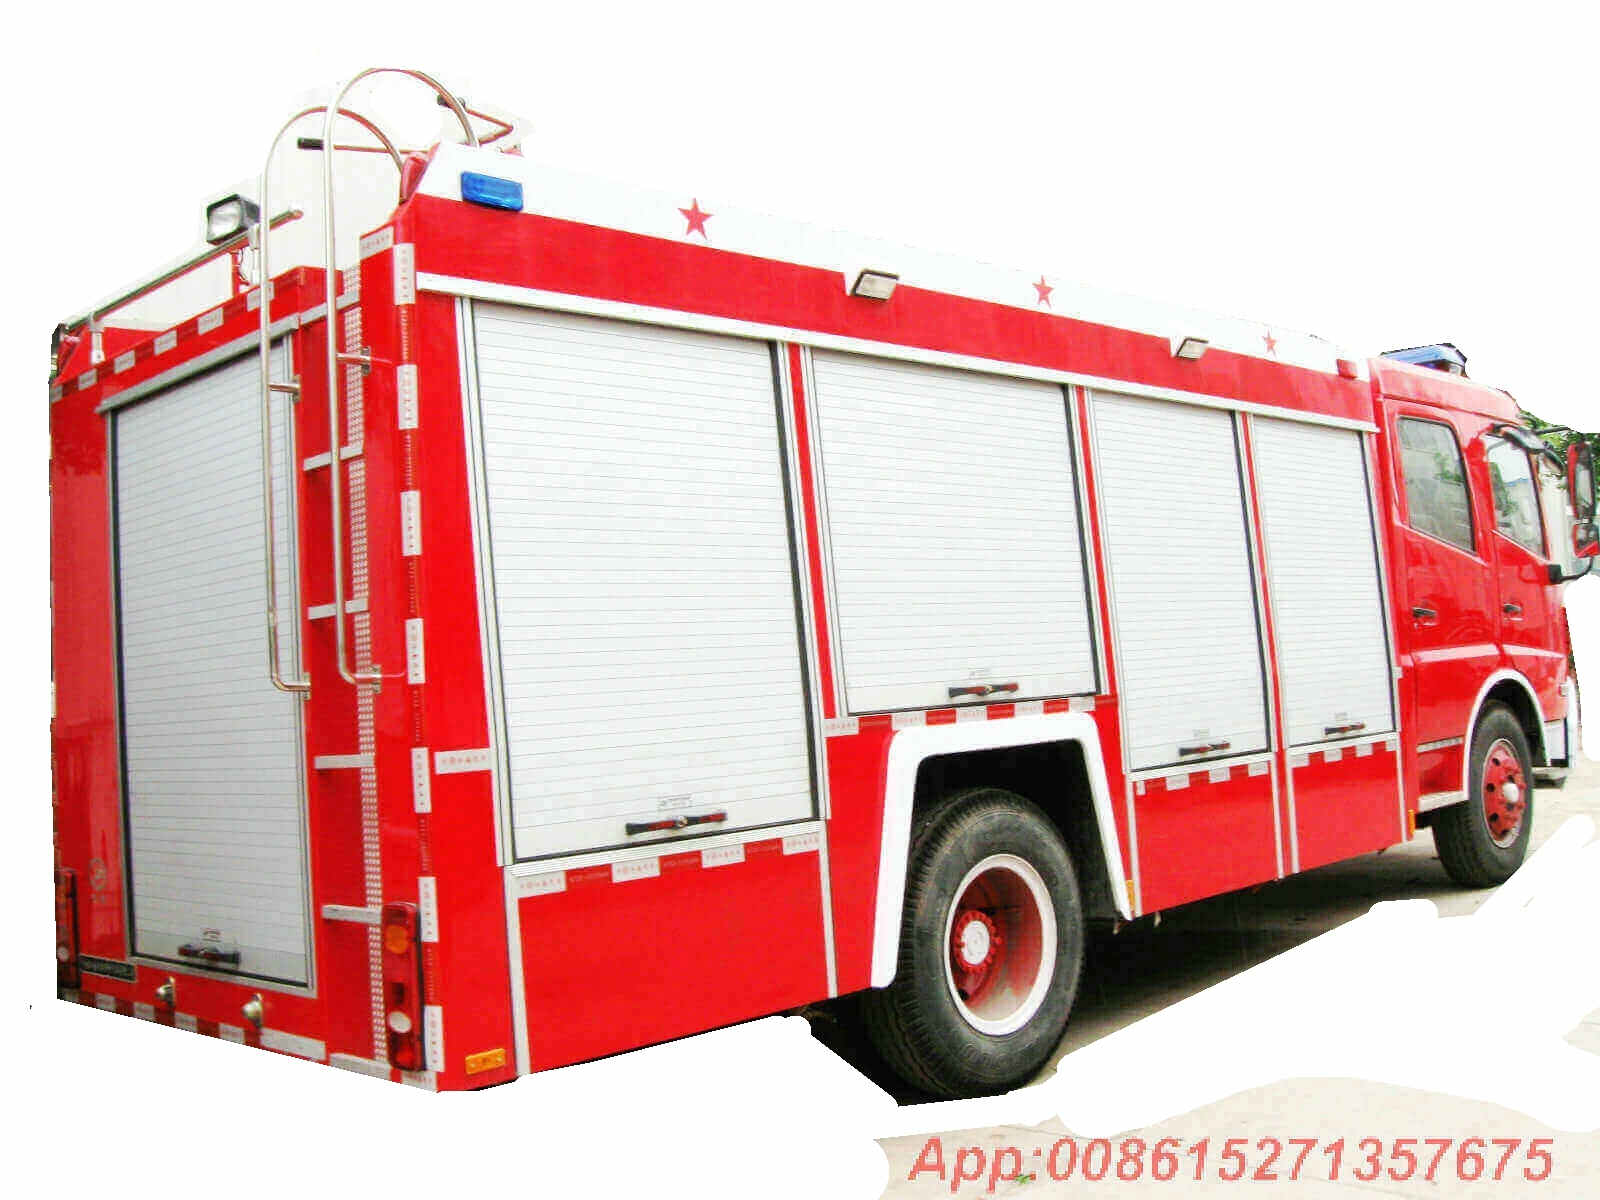 DFL 5500L Water Tanker Fire Truck